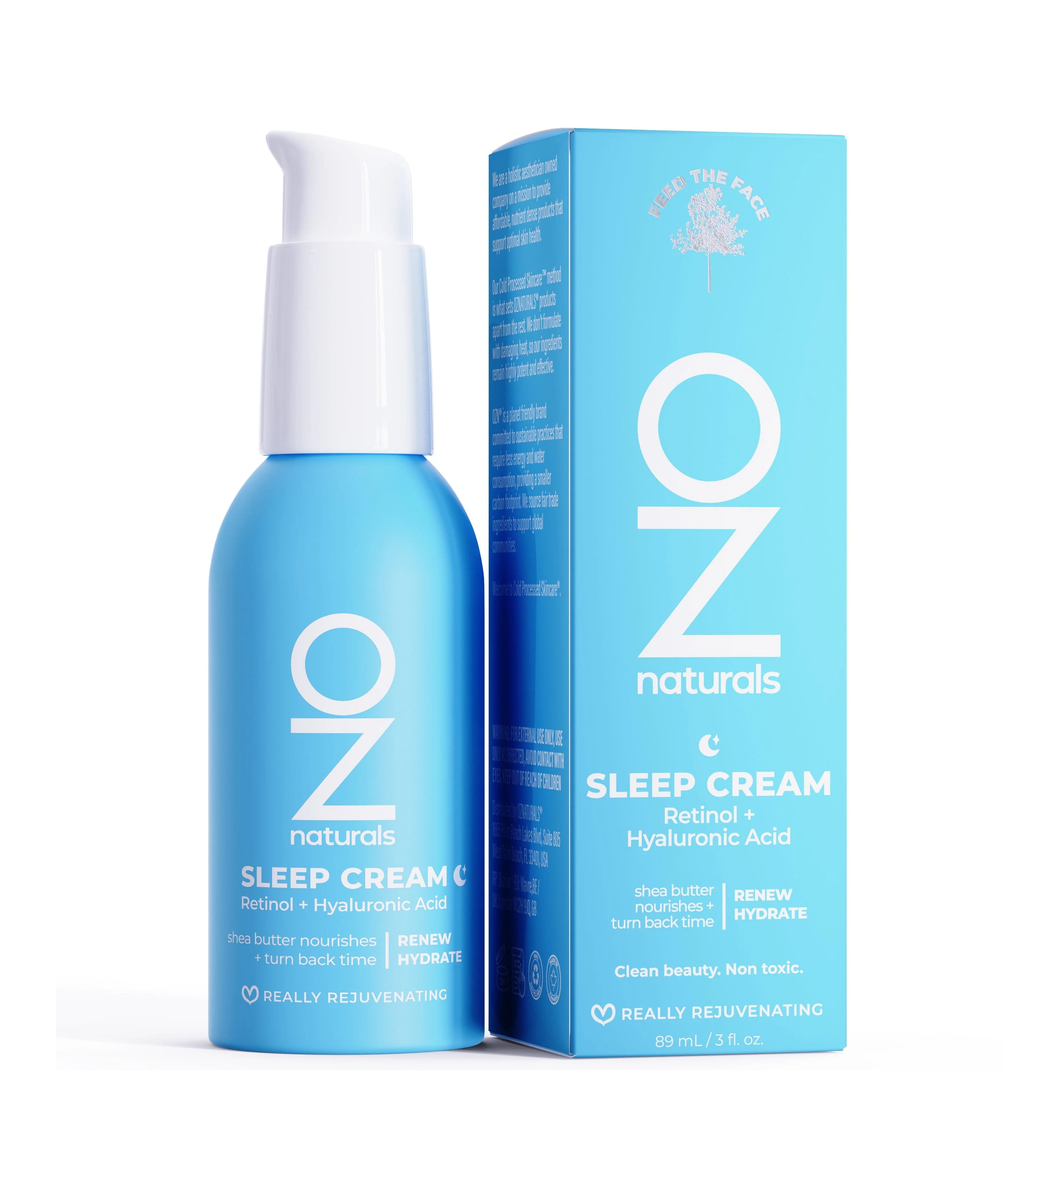 OZ Naturals - Sleep Cream Retinol + Hyaluronic Acid 89ml